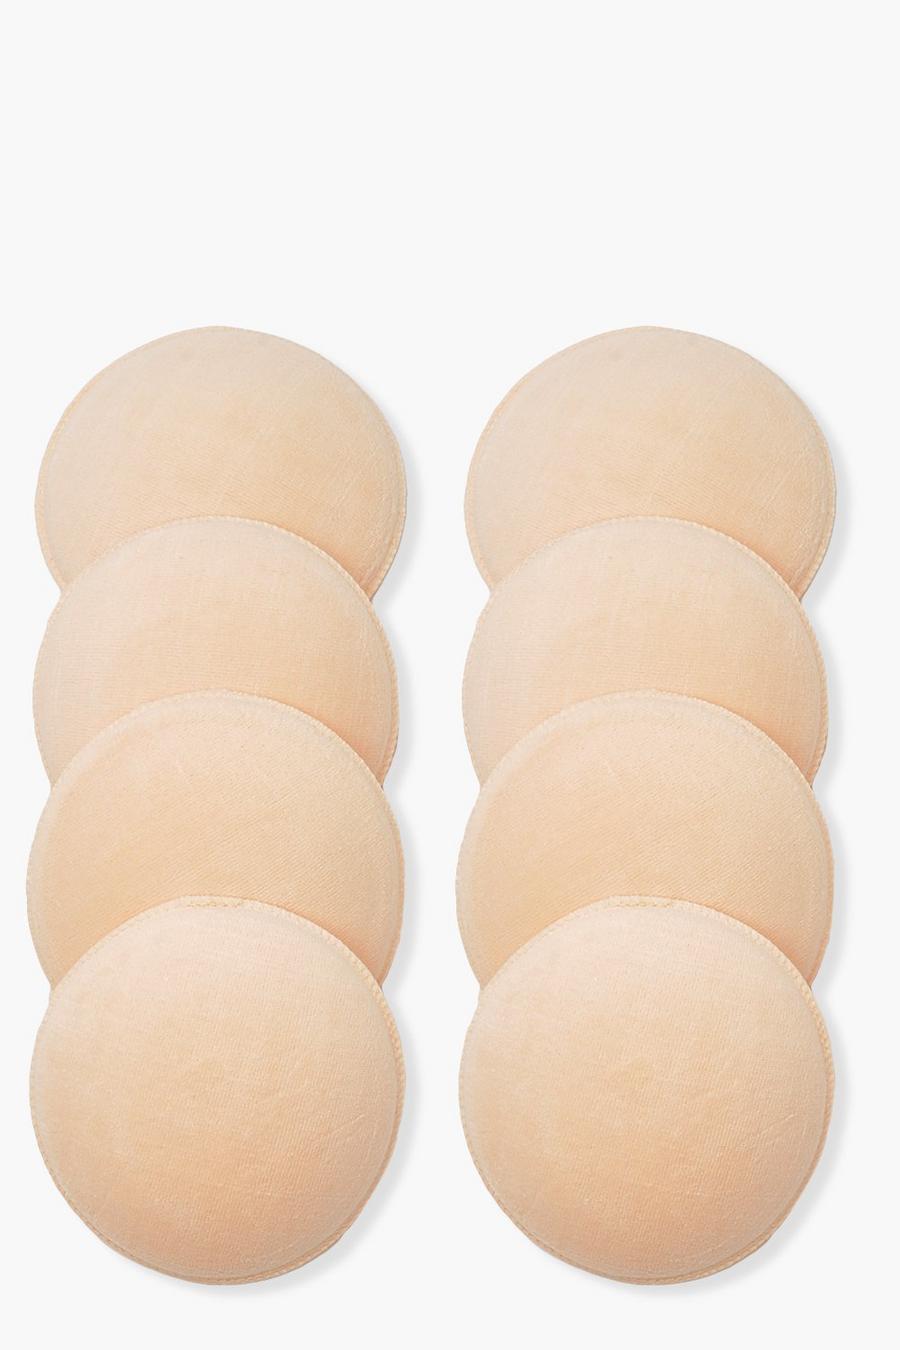 Coppette seno lavabili anti perdita per allattamento (8 pz.), Nude image number 1